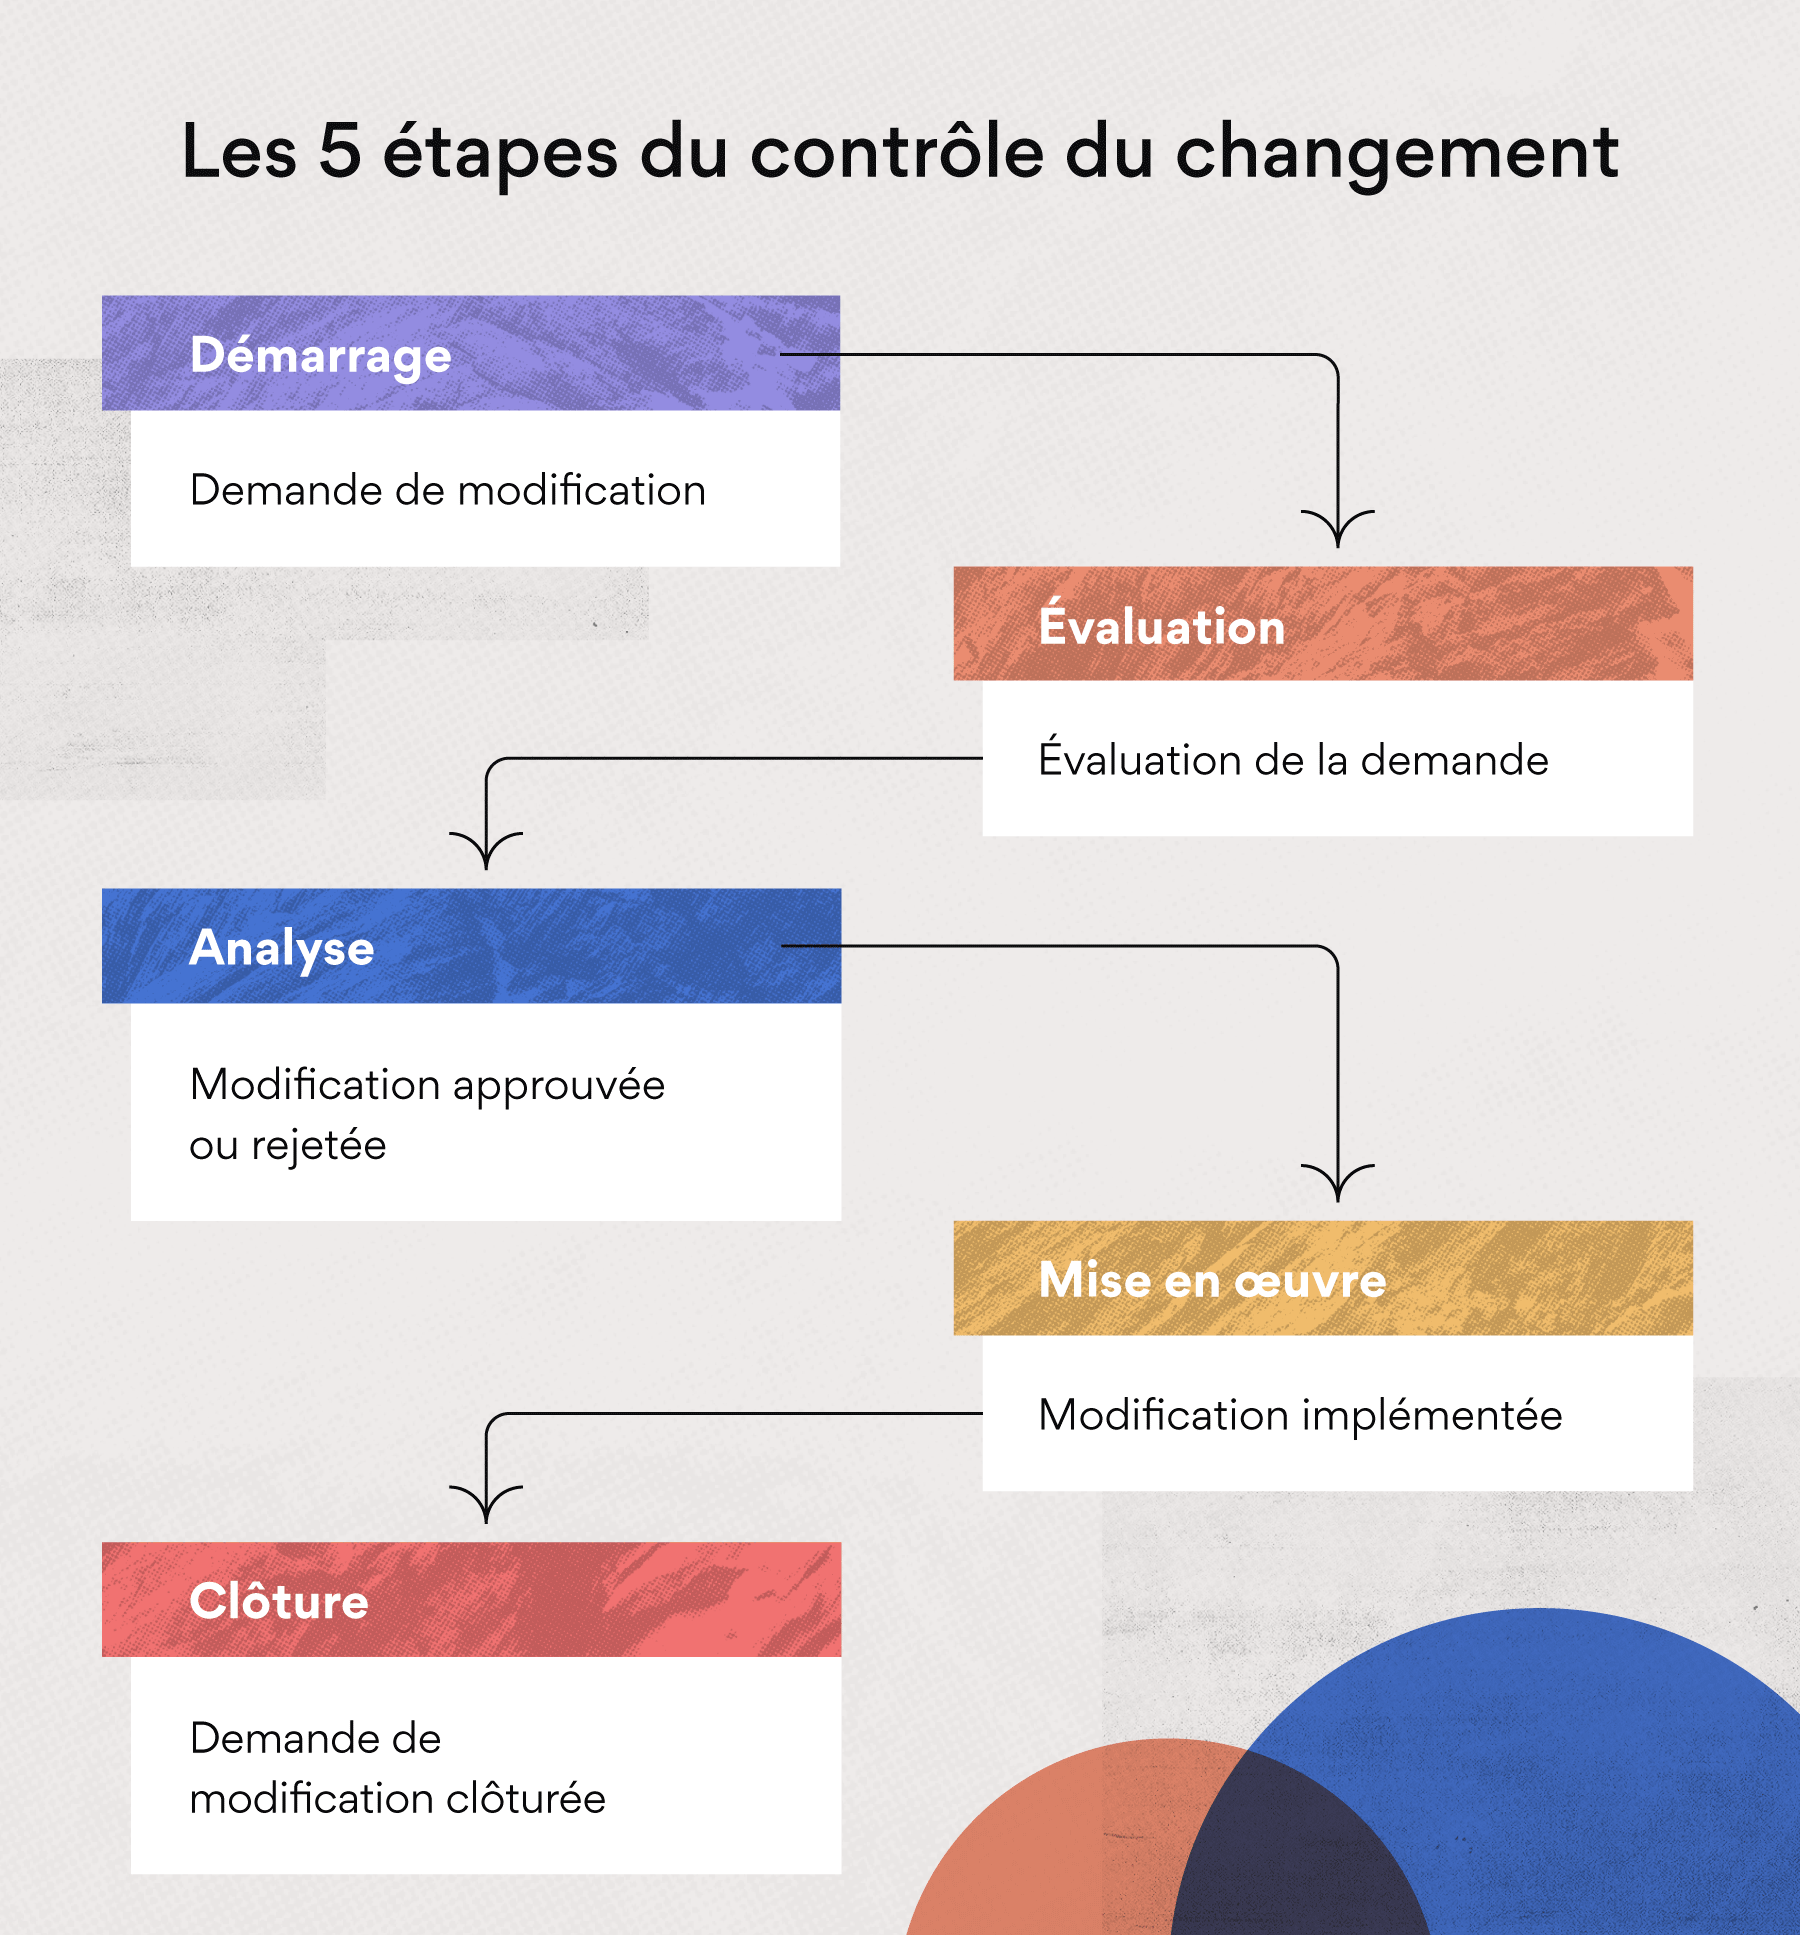 Les 5 étapes du contrôle du changement